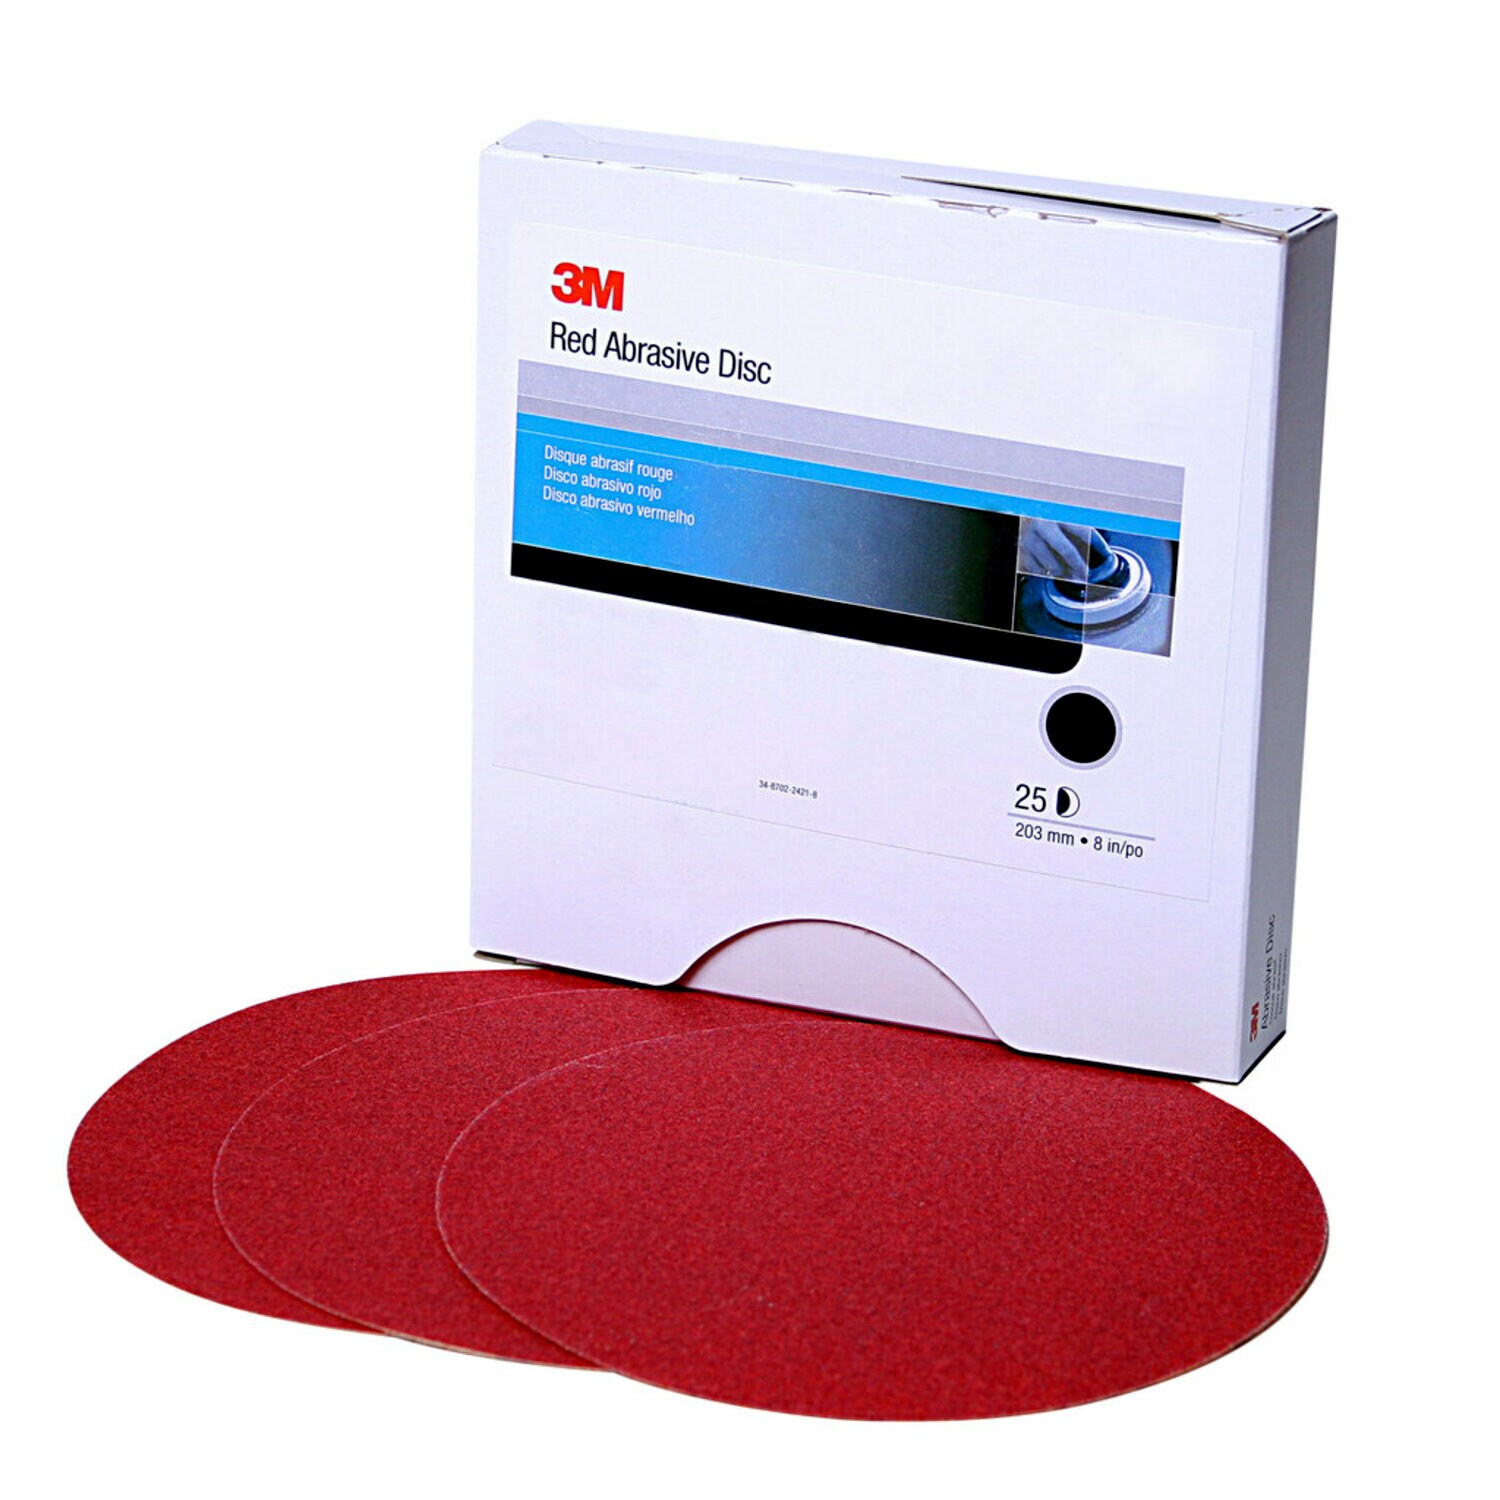 7000119768 - 3M Red Abrasive Stikit Disc, 01111, 6 in, P220 grade, 100 discs per
roll, 6 rolls per case